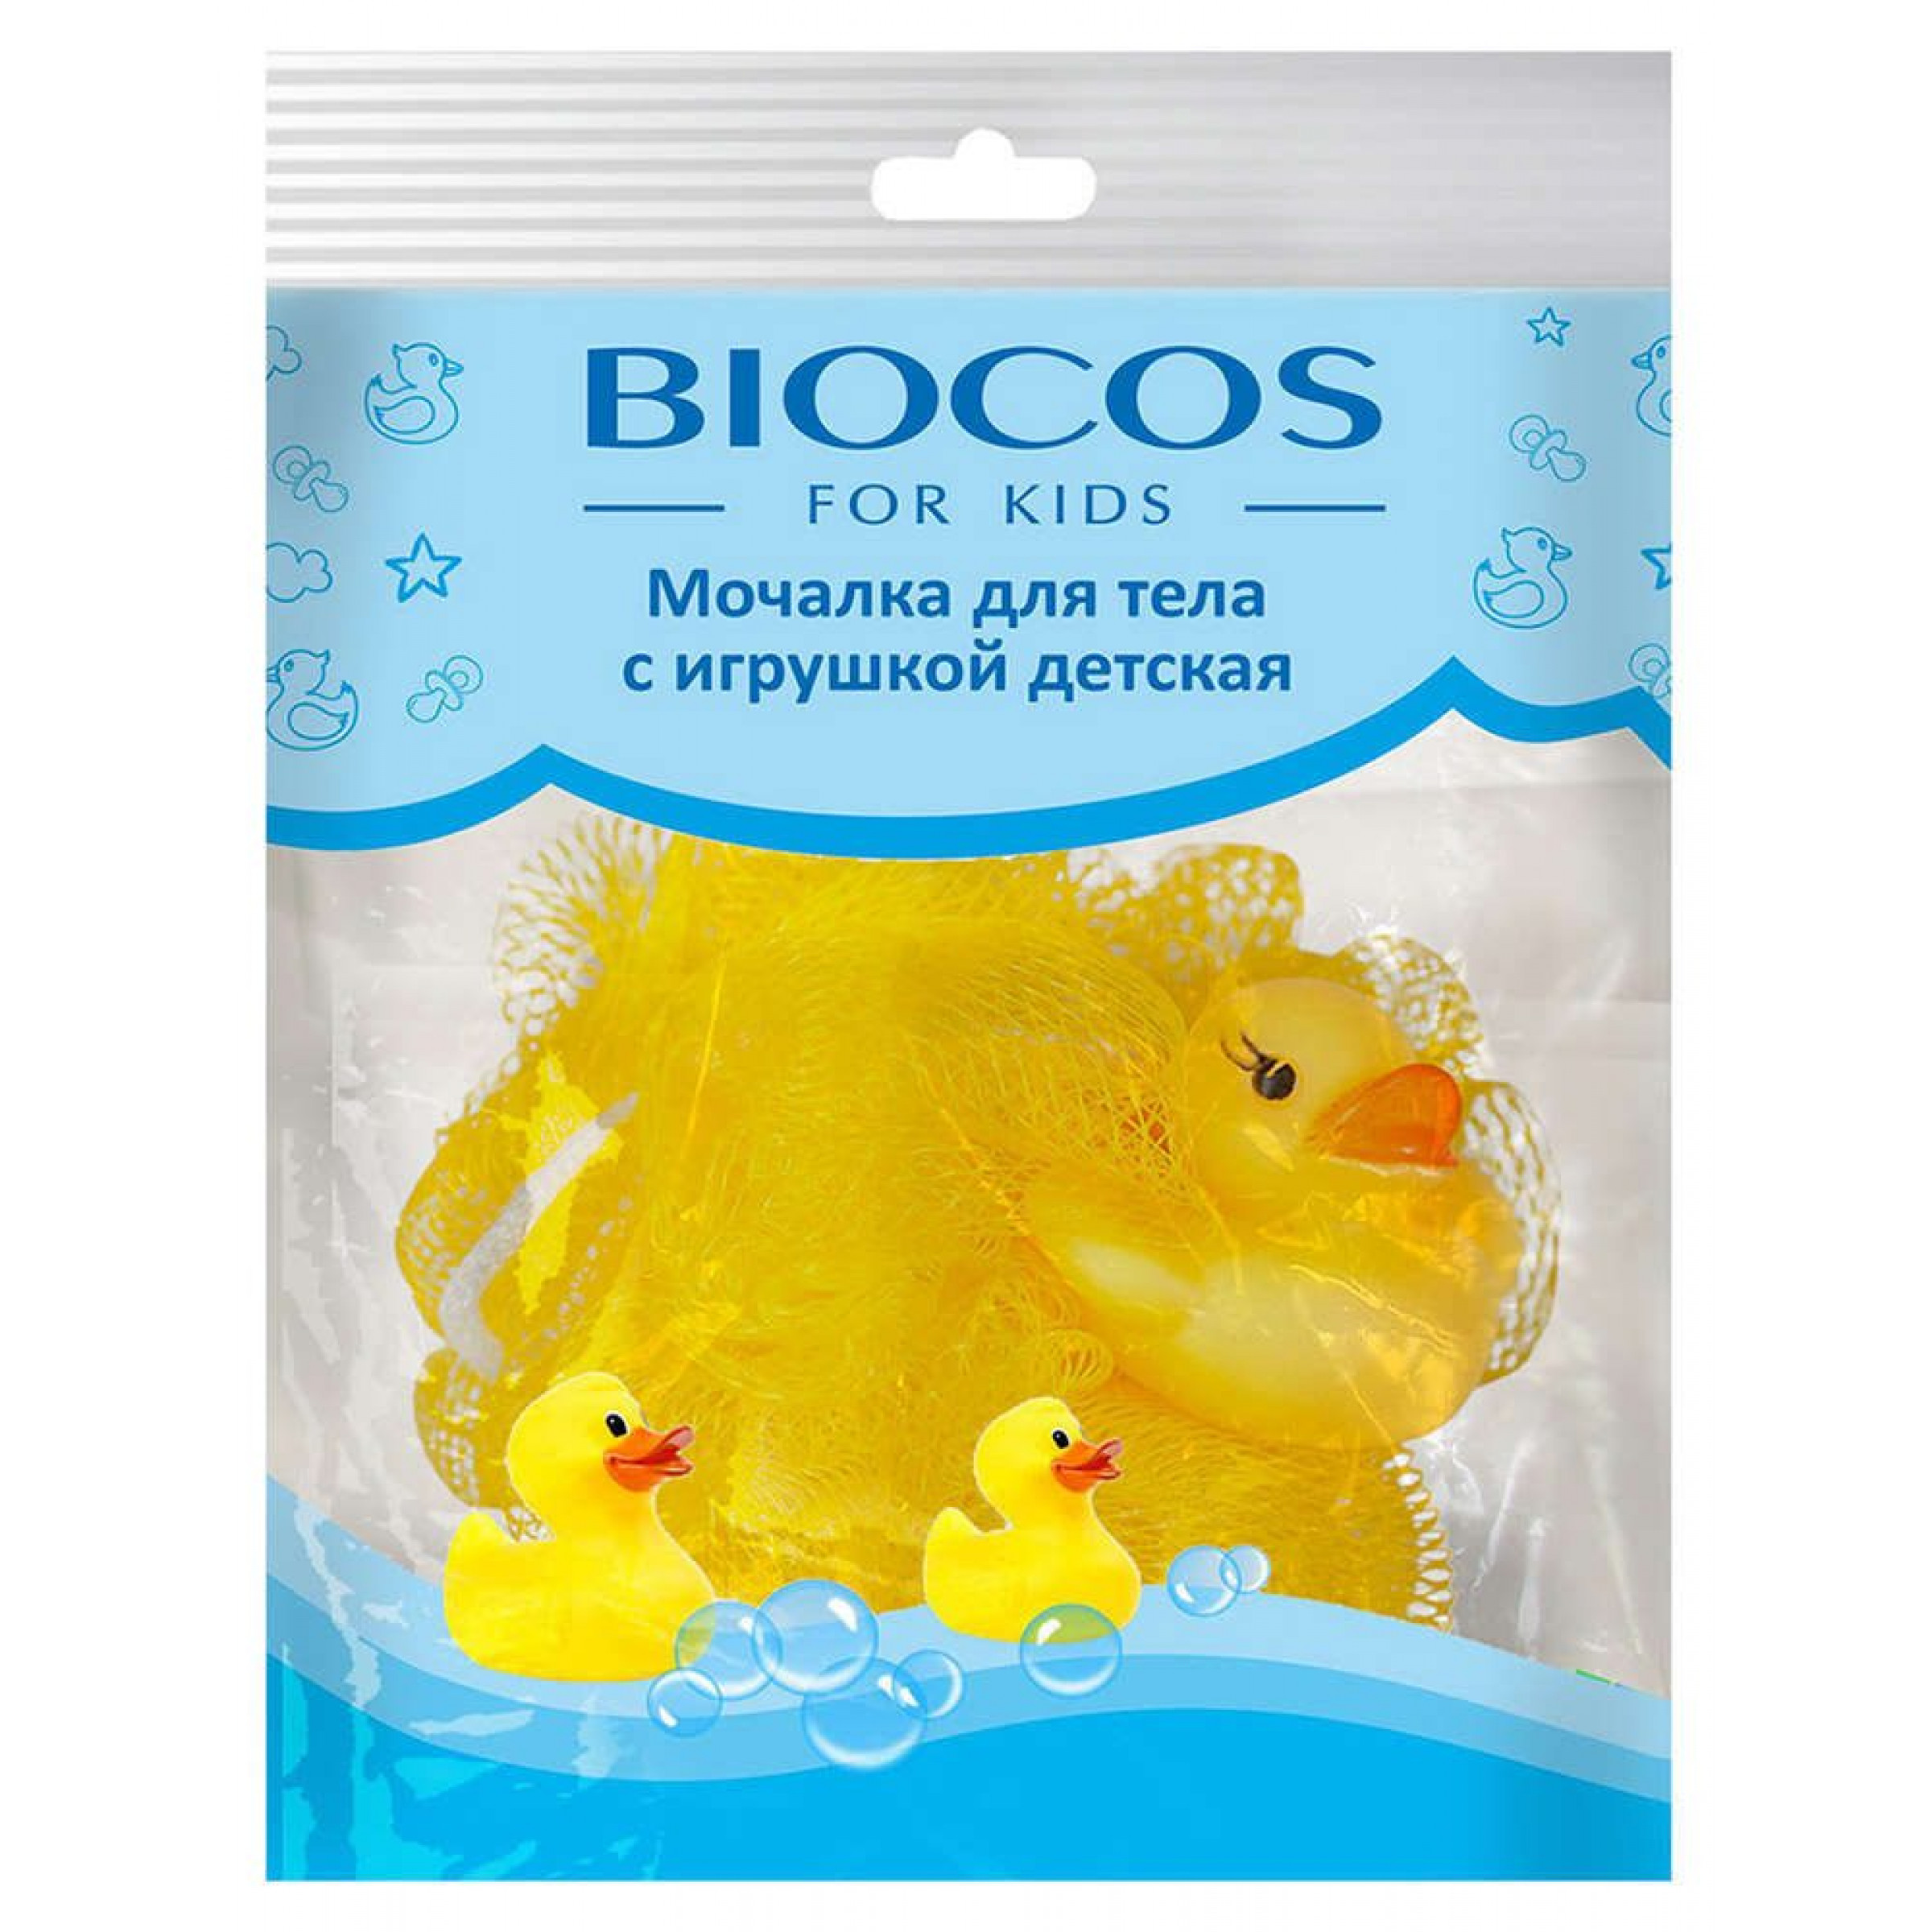 Мочалка для тела с игрушкой детская цвет в ассортименте BioCos, 1 шт